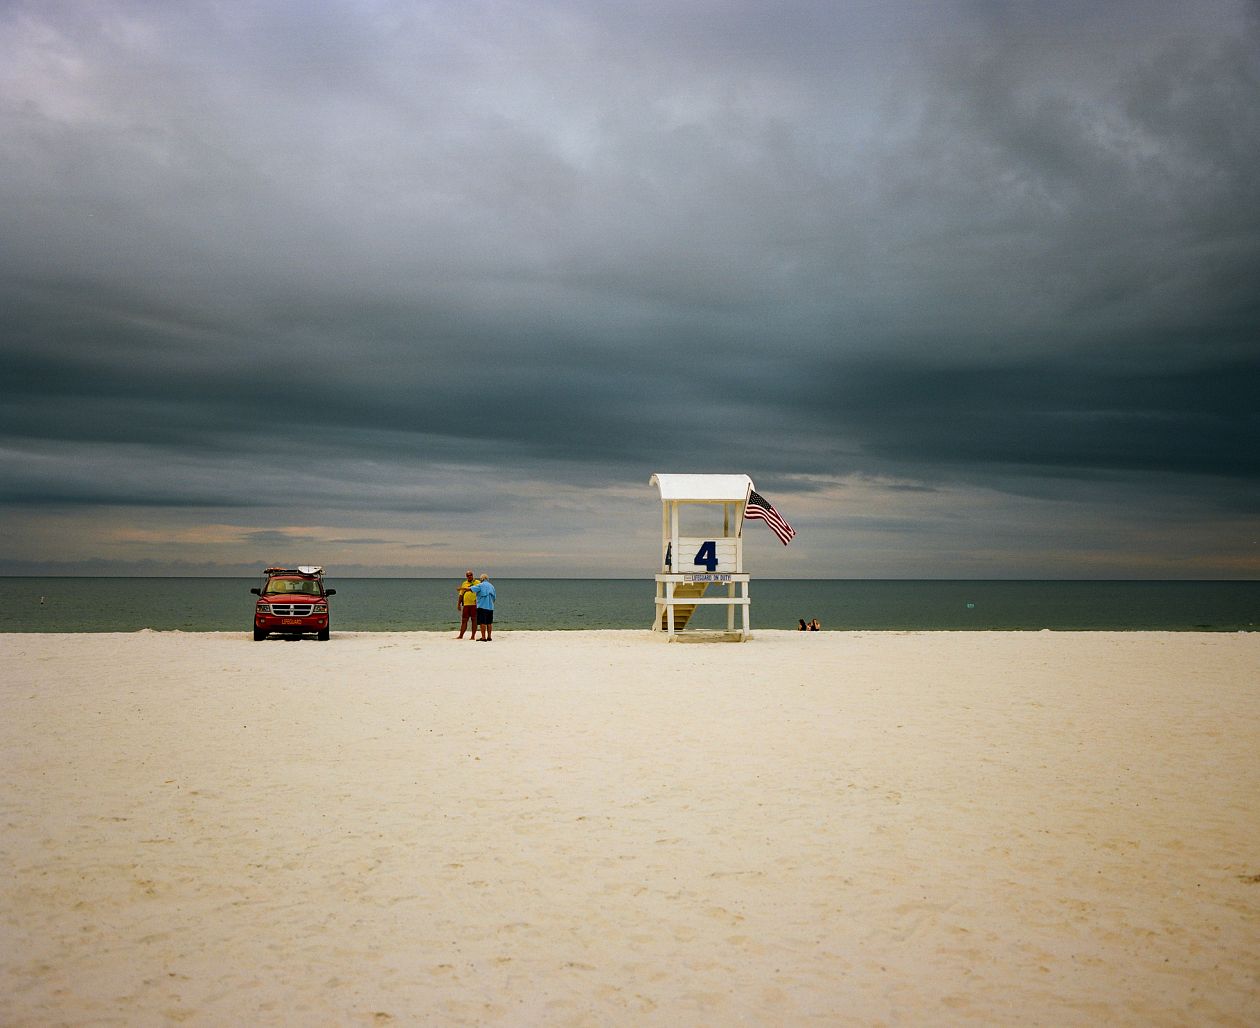 Lifeguard tower at Mobile Beach, Alabama.